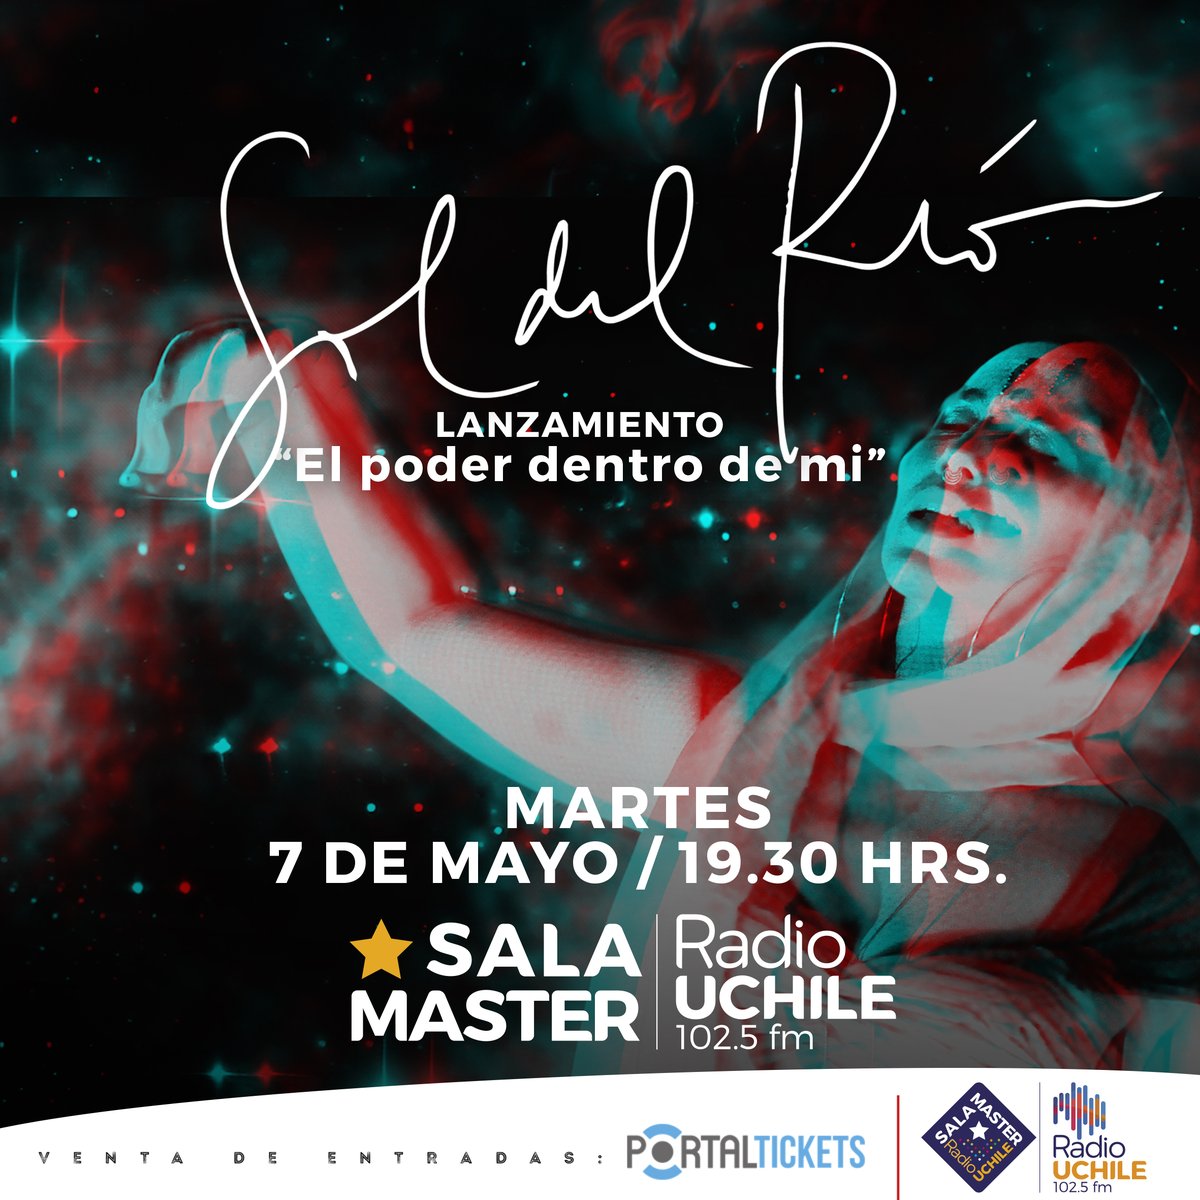 #AgendaSalaMaster | Este 7 de mayo, desde las 19:30 horas, Sol del Río vuelve a los escenarios para lanzar una potente canción “El poder dentro de mi”. No te lo pierdas. 👉Entradas en: portaldisc.com/evento/soldelr…